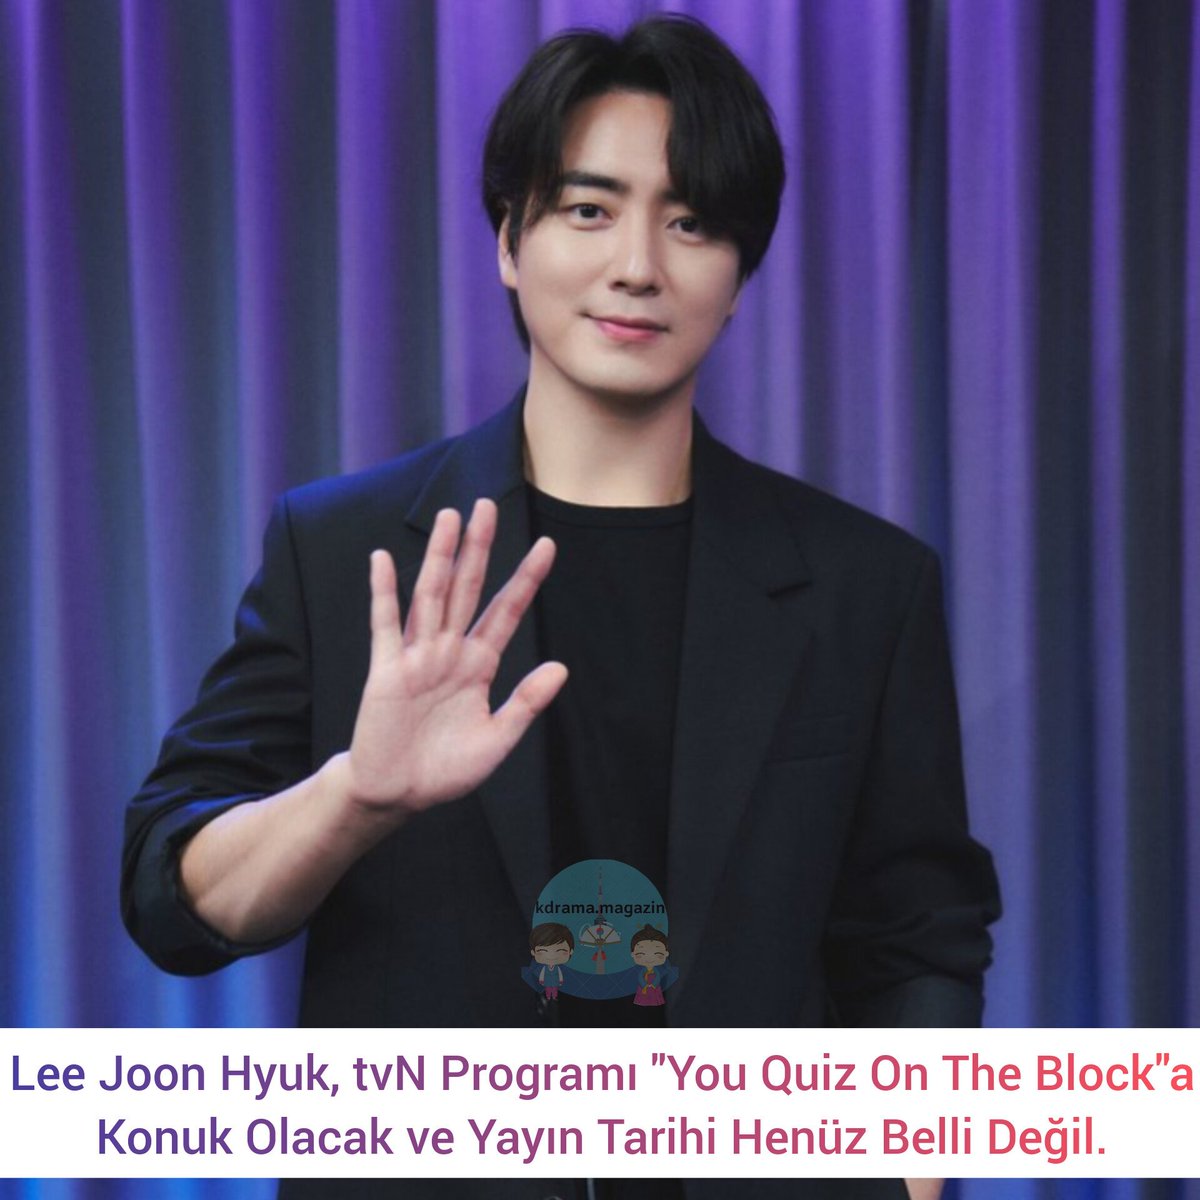 #LeeJoonHyuk, tvN Programı #YouQuizOnTheBlock'a Konuk Olacak ve Yayın Tarihi Henüz Belli Değil.